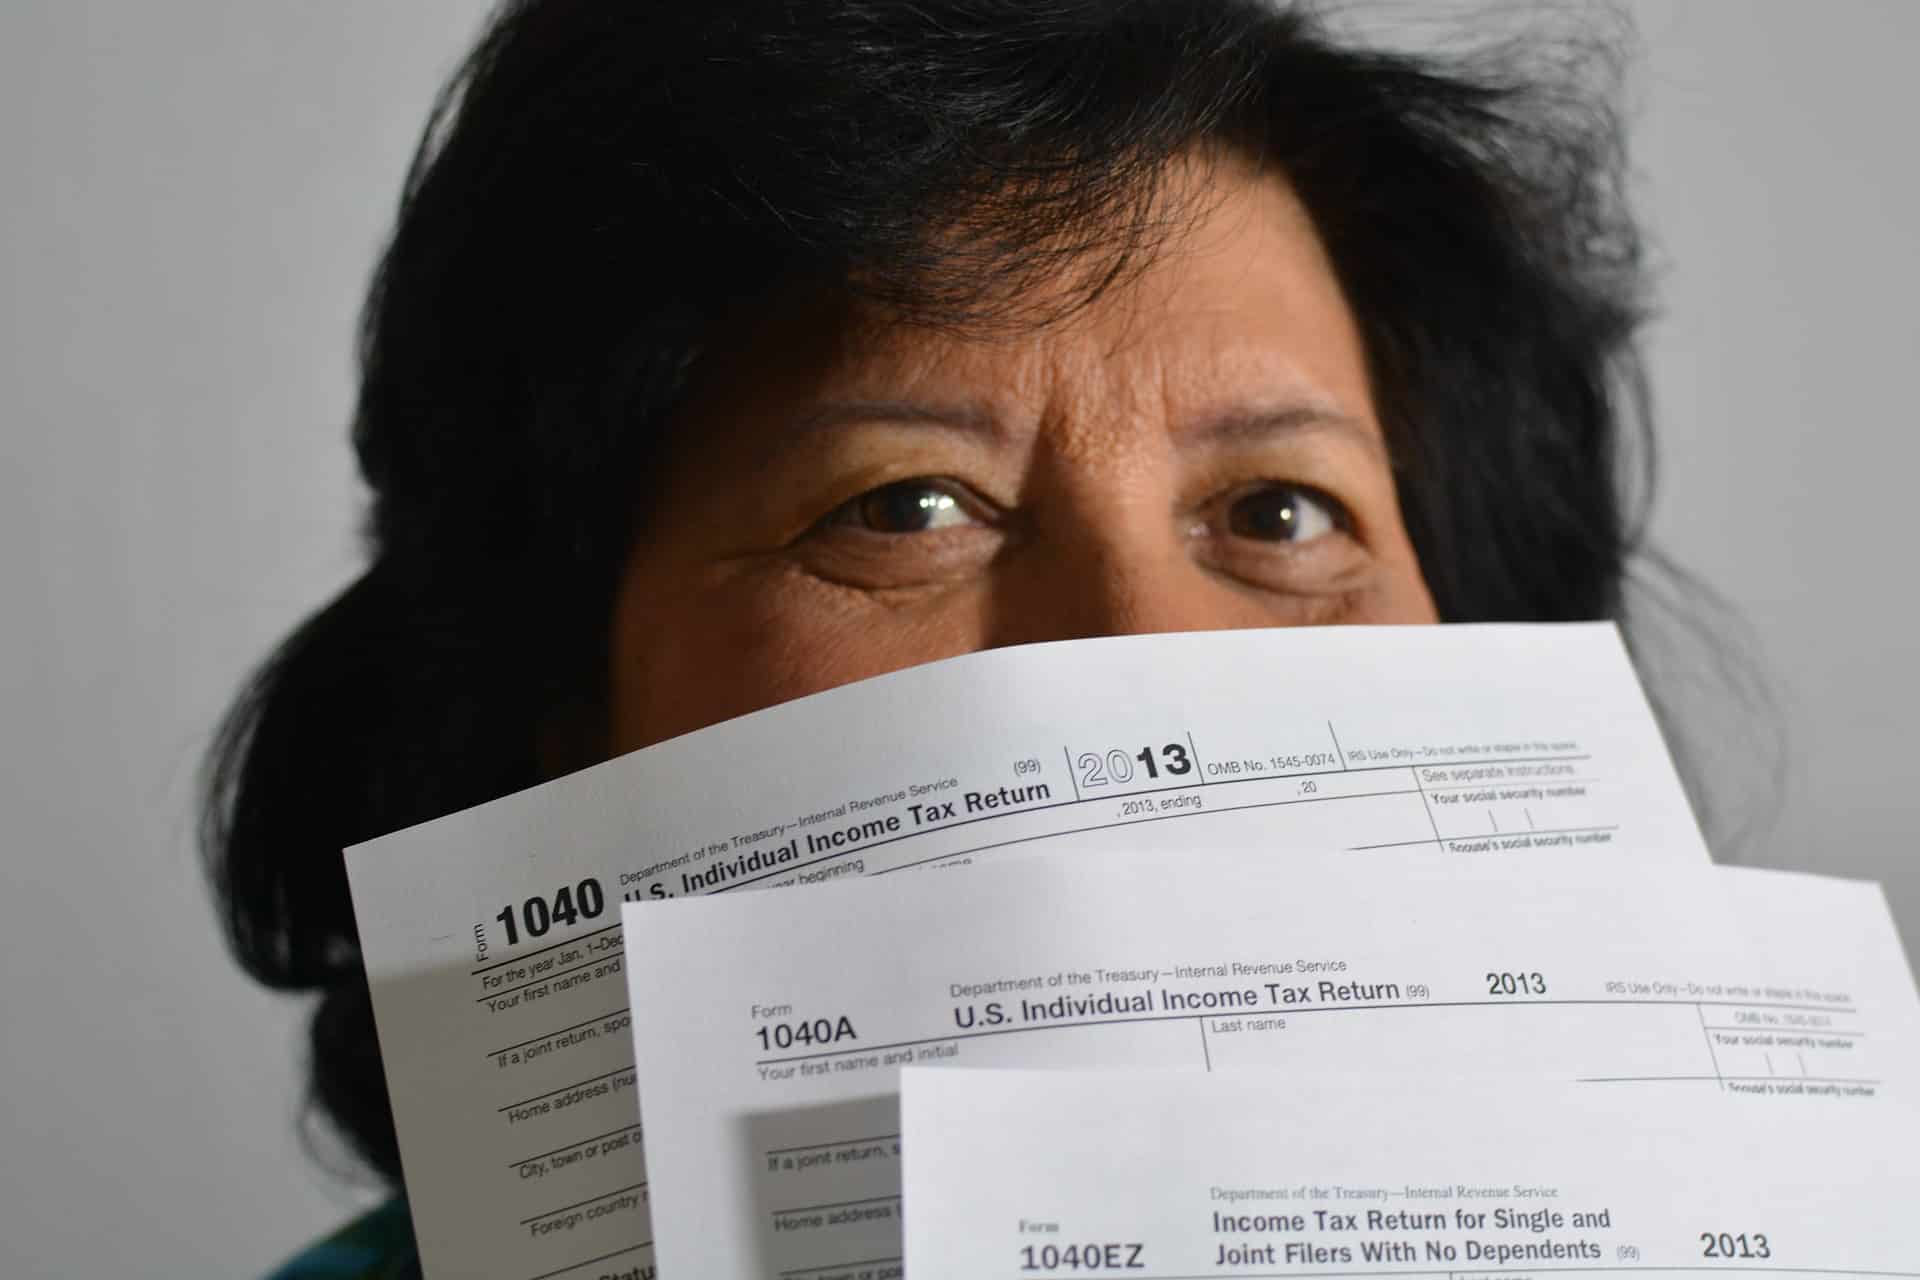 Le visage d'une dame à moitié caché sous les formulaires de déclaration d'impôts